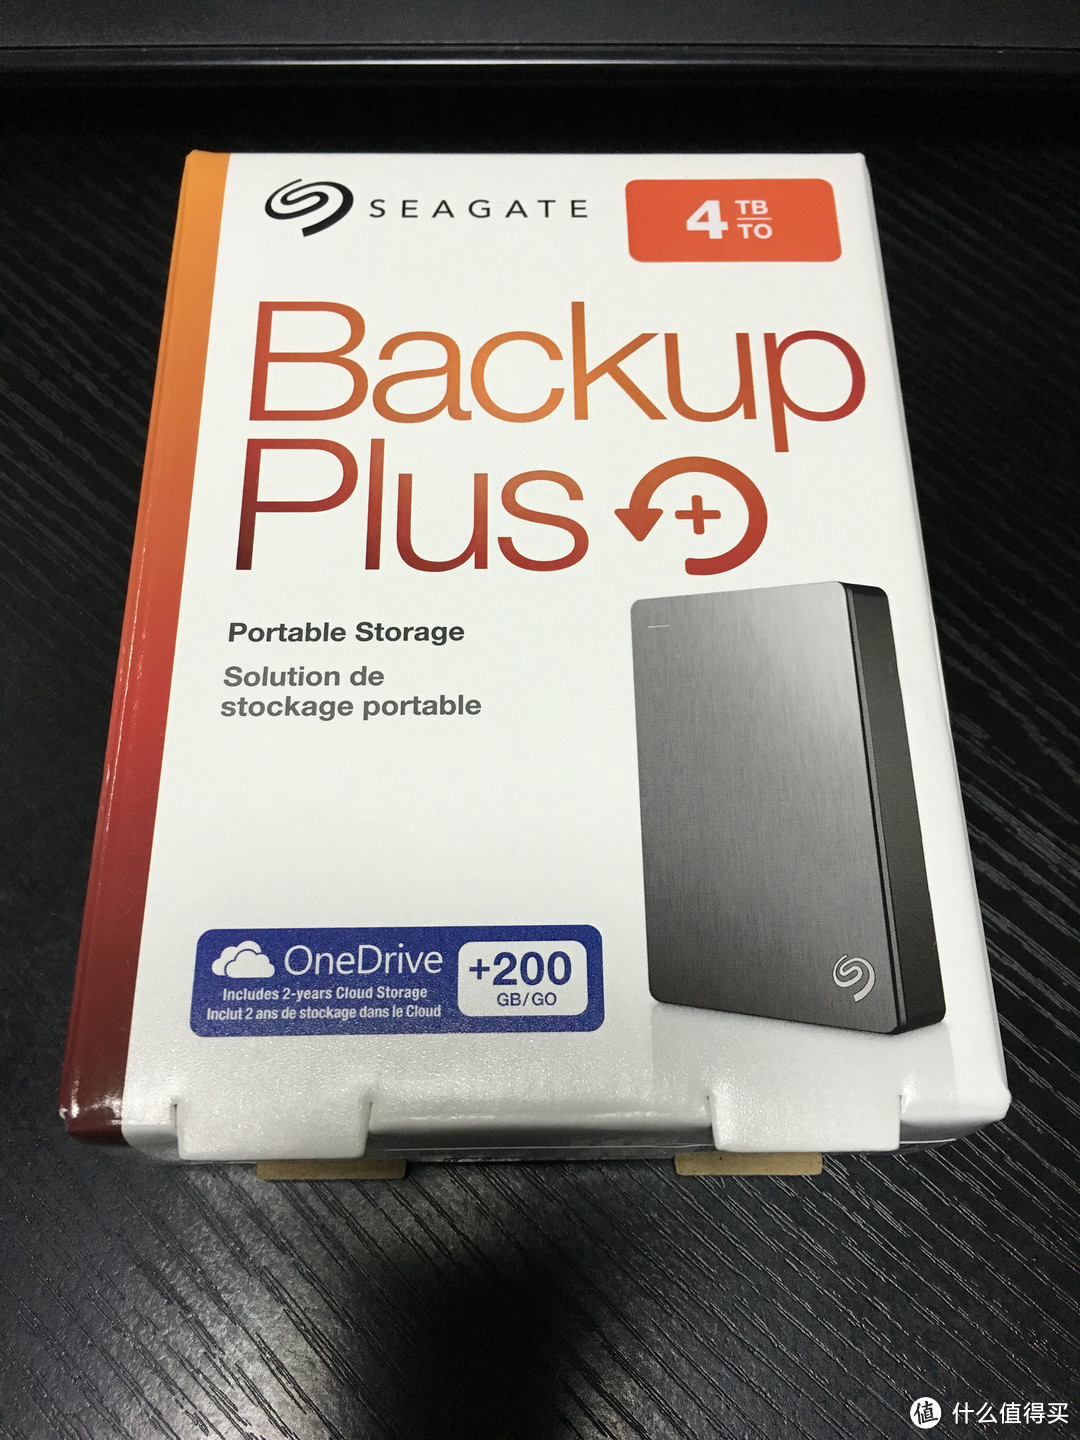 自己爆料自己晒:SEAGATE 希捷 Backup Plus 新睿品 便携式移动硬盘开箱